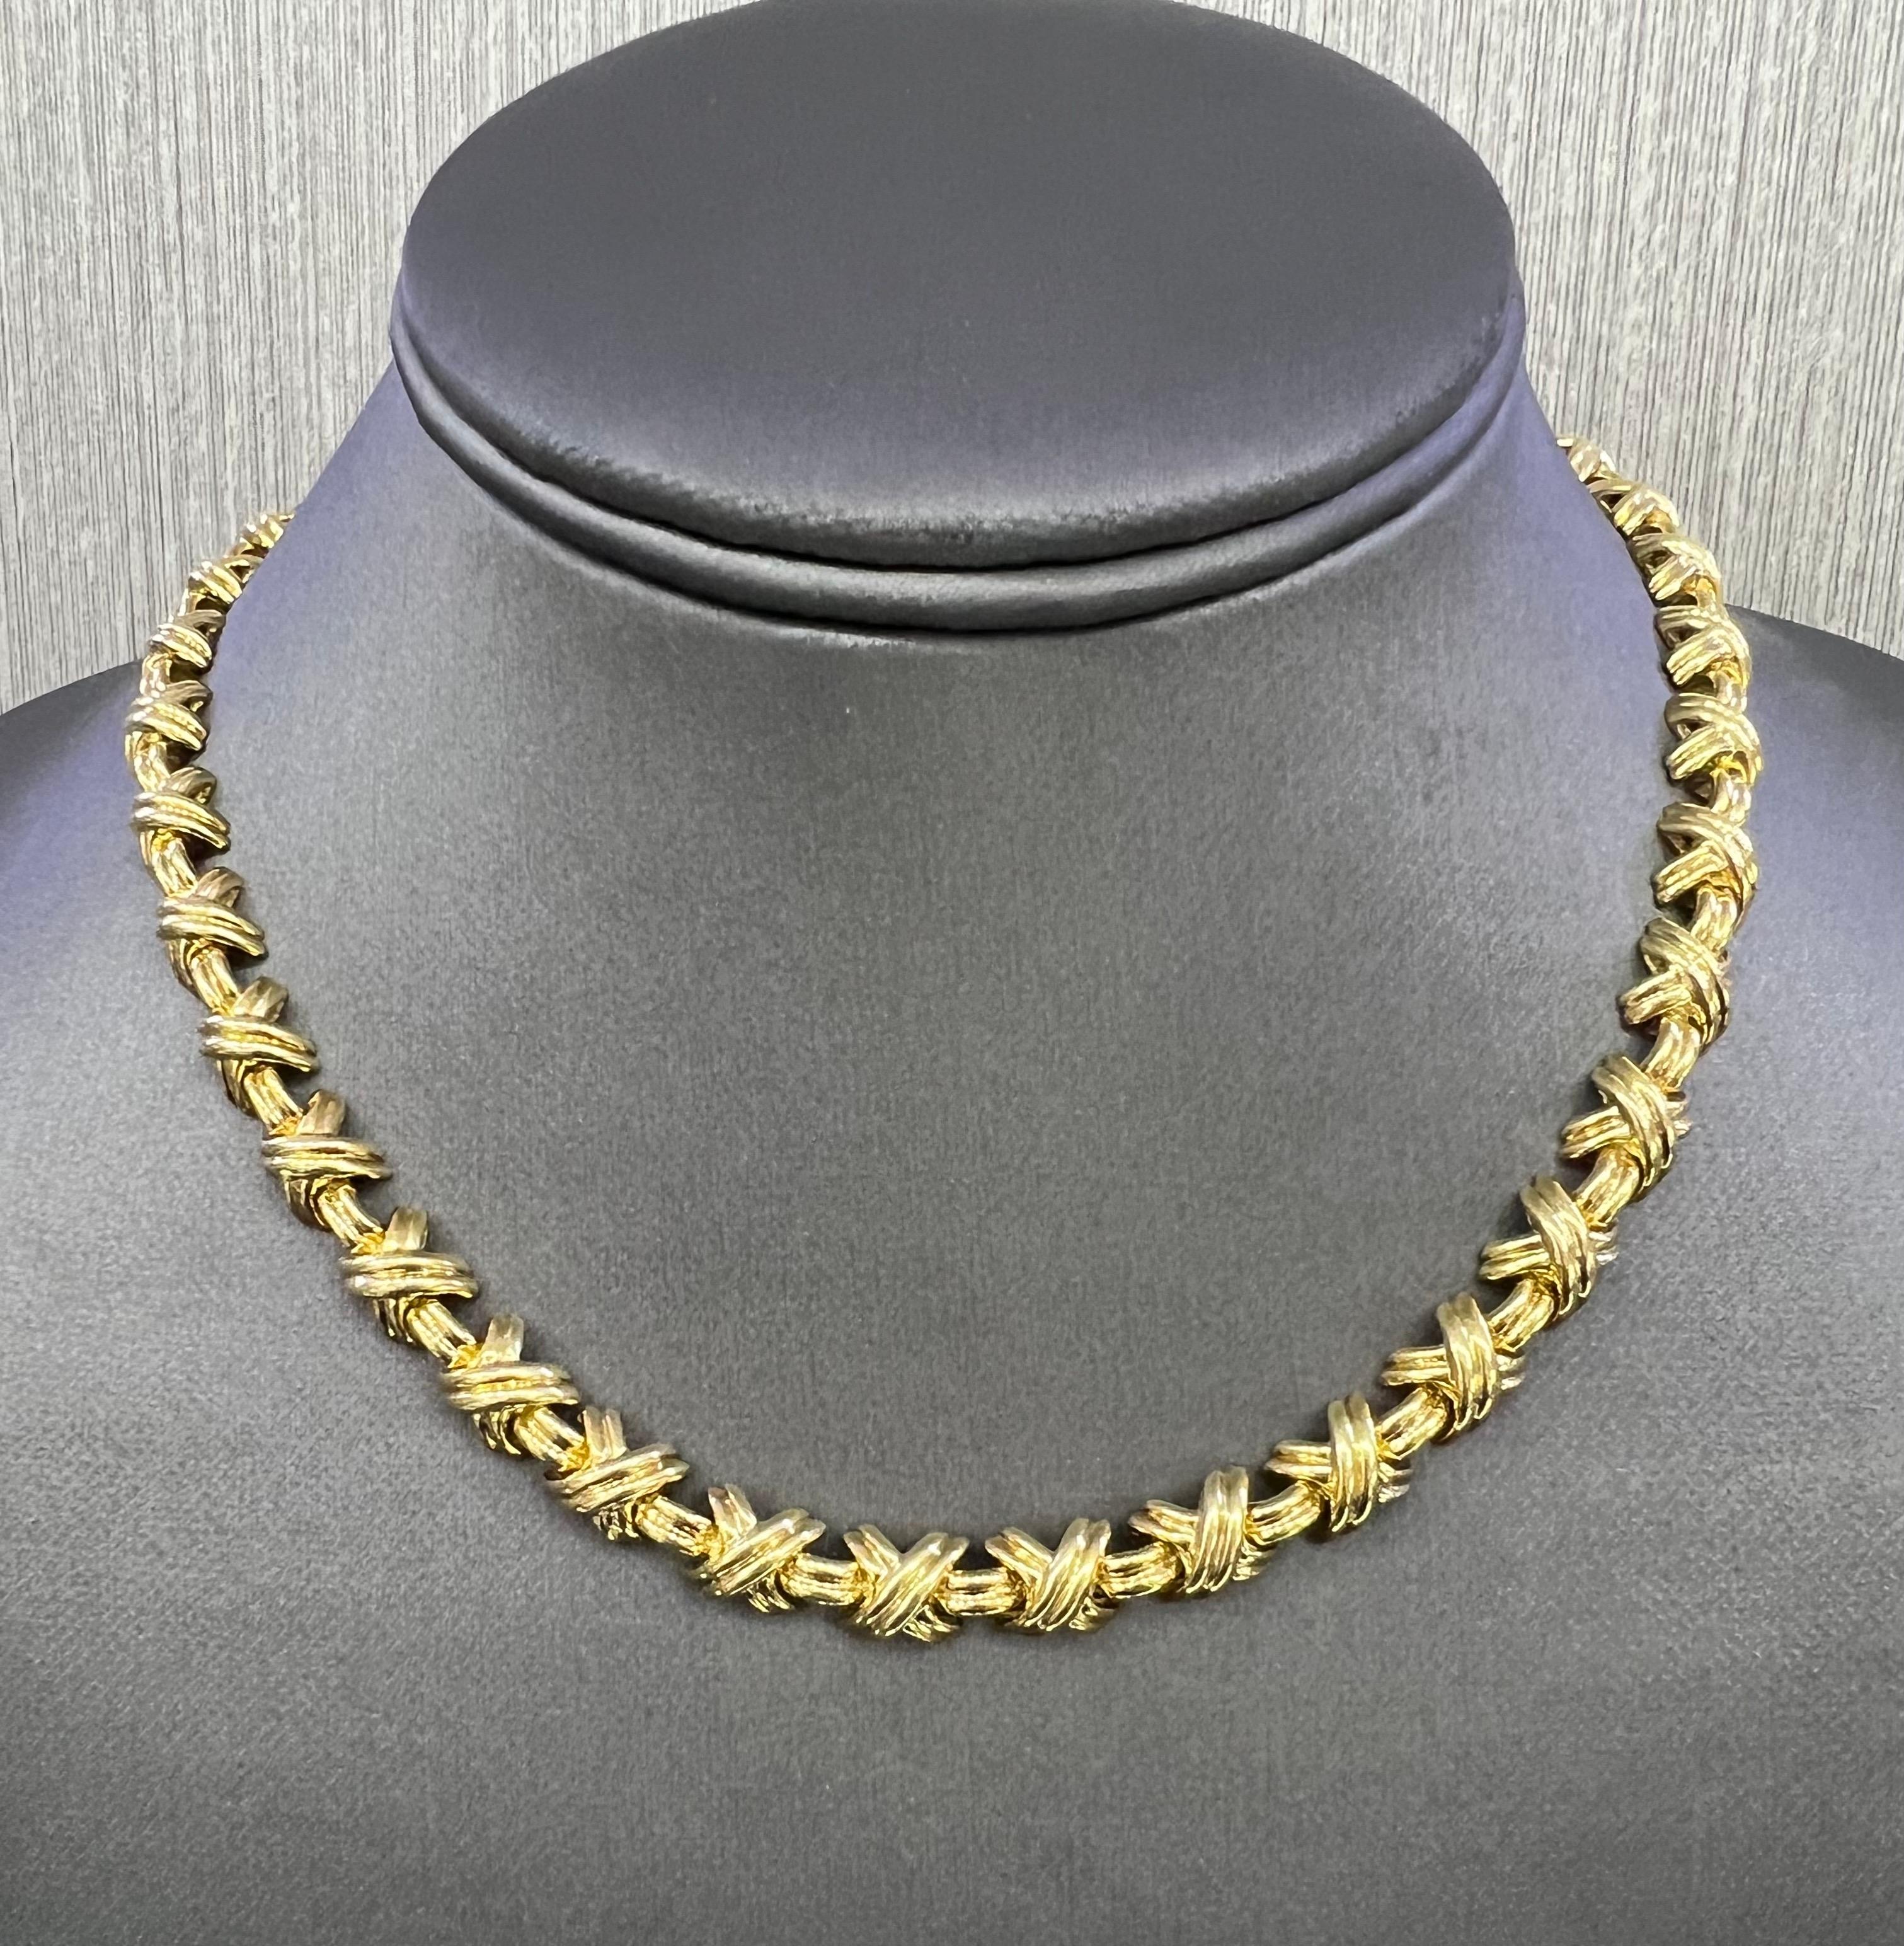 Wunderschöne Halskette des berühmten Designers Tiffany & Co. Die Halskette ist aus massivem 18-karätigem Gelbgold gefertigt und stammt aus der Kollektion X. 
   Die Halskette hat eine Breite von 7,5 mm und wiegt 64,4 Gramm. Die Kette misst 16